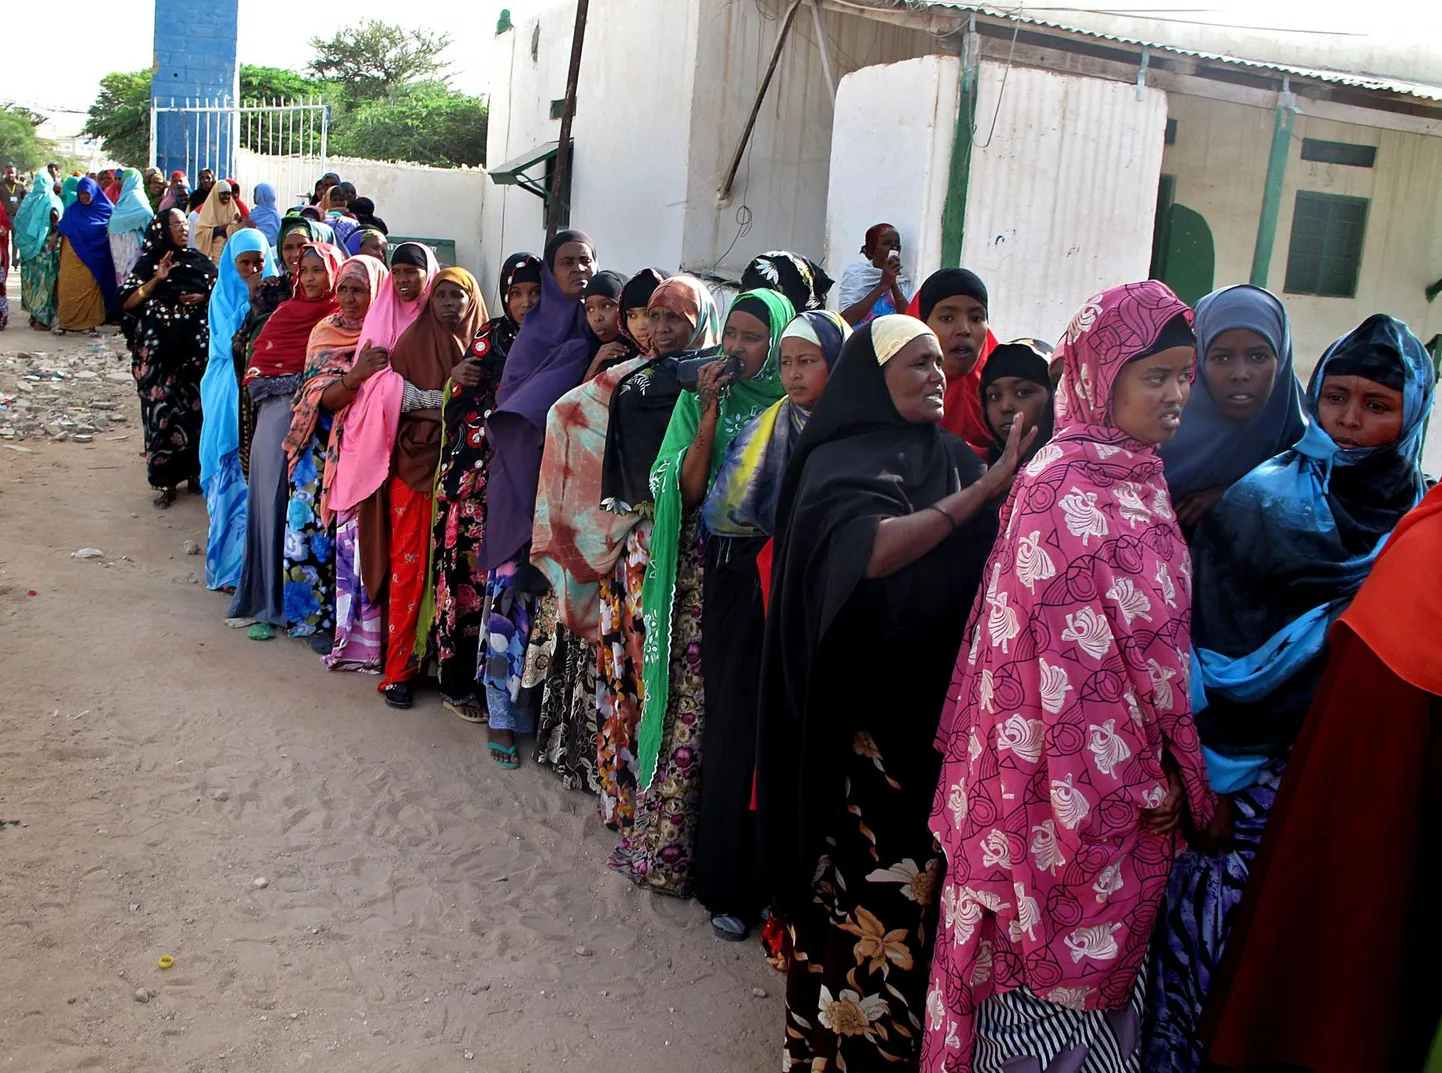 Somaalimaa naised 2010. aastal pealinnas Hargeysas presidendivalimistel osalemas.  FOTO: Ali Musa / AFP / Scanpix